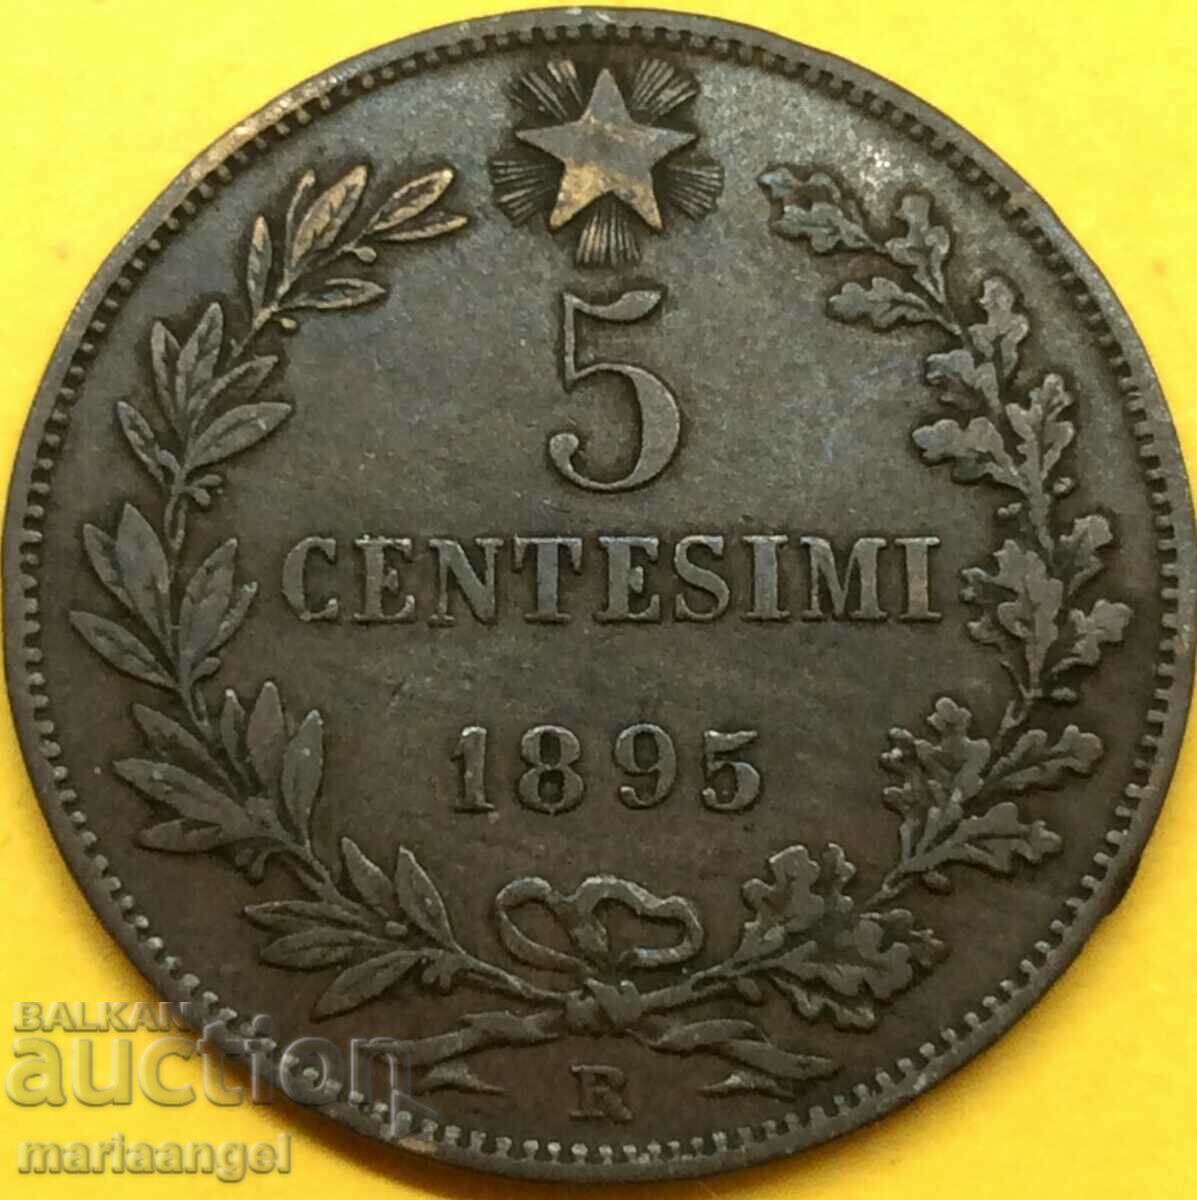 5 centesimi 1895 Italy Umberto 1 bronze